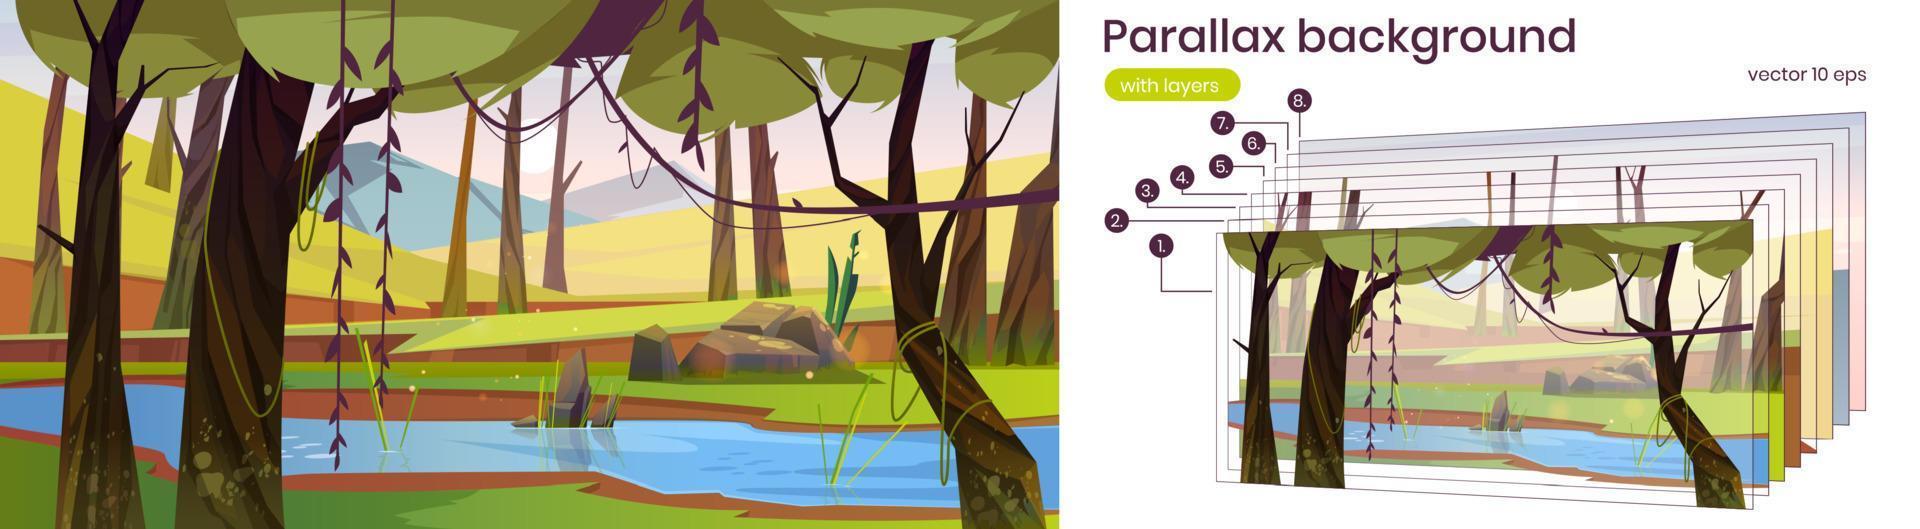 parallax bakgrund med bäck i skog vektor